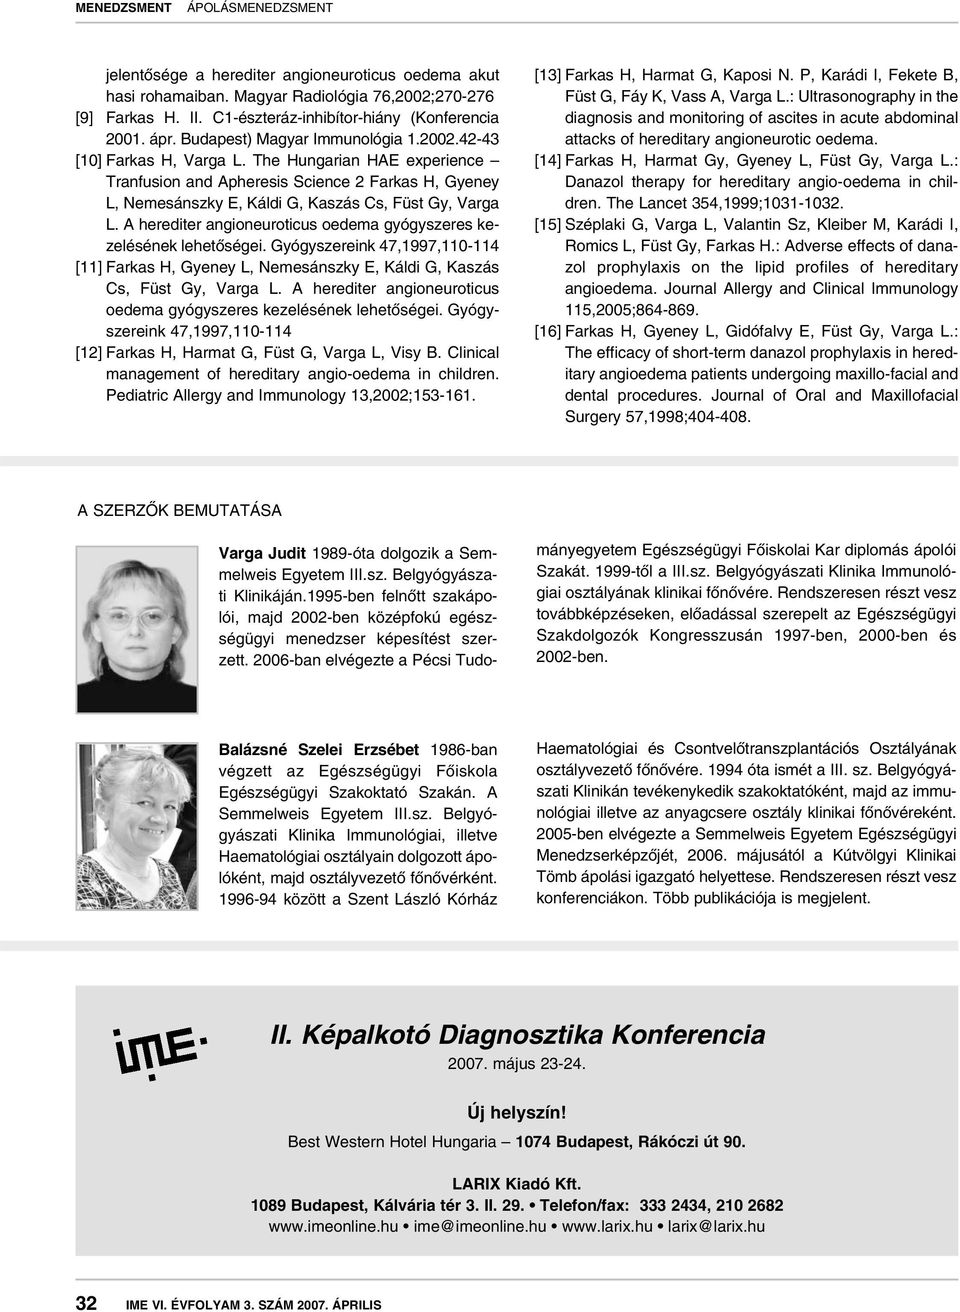 The Hungarian HAE experience Tranfusion and Apheresis Science 2 Farkas H, Gyeney L, Nemesánszky E, Káldi G, Kaszás Cs, Füst Gy, Varga L.